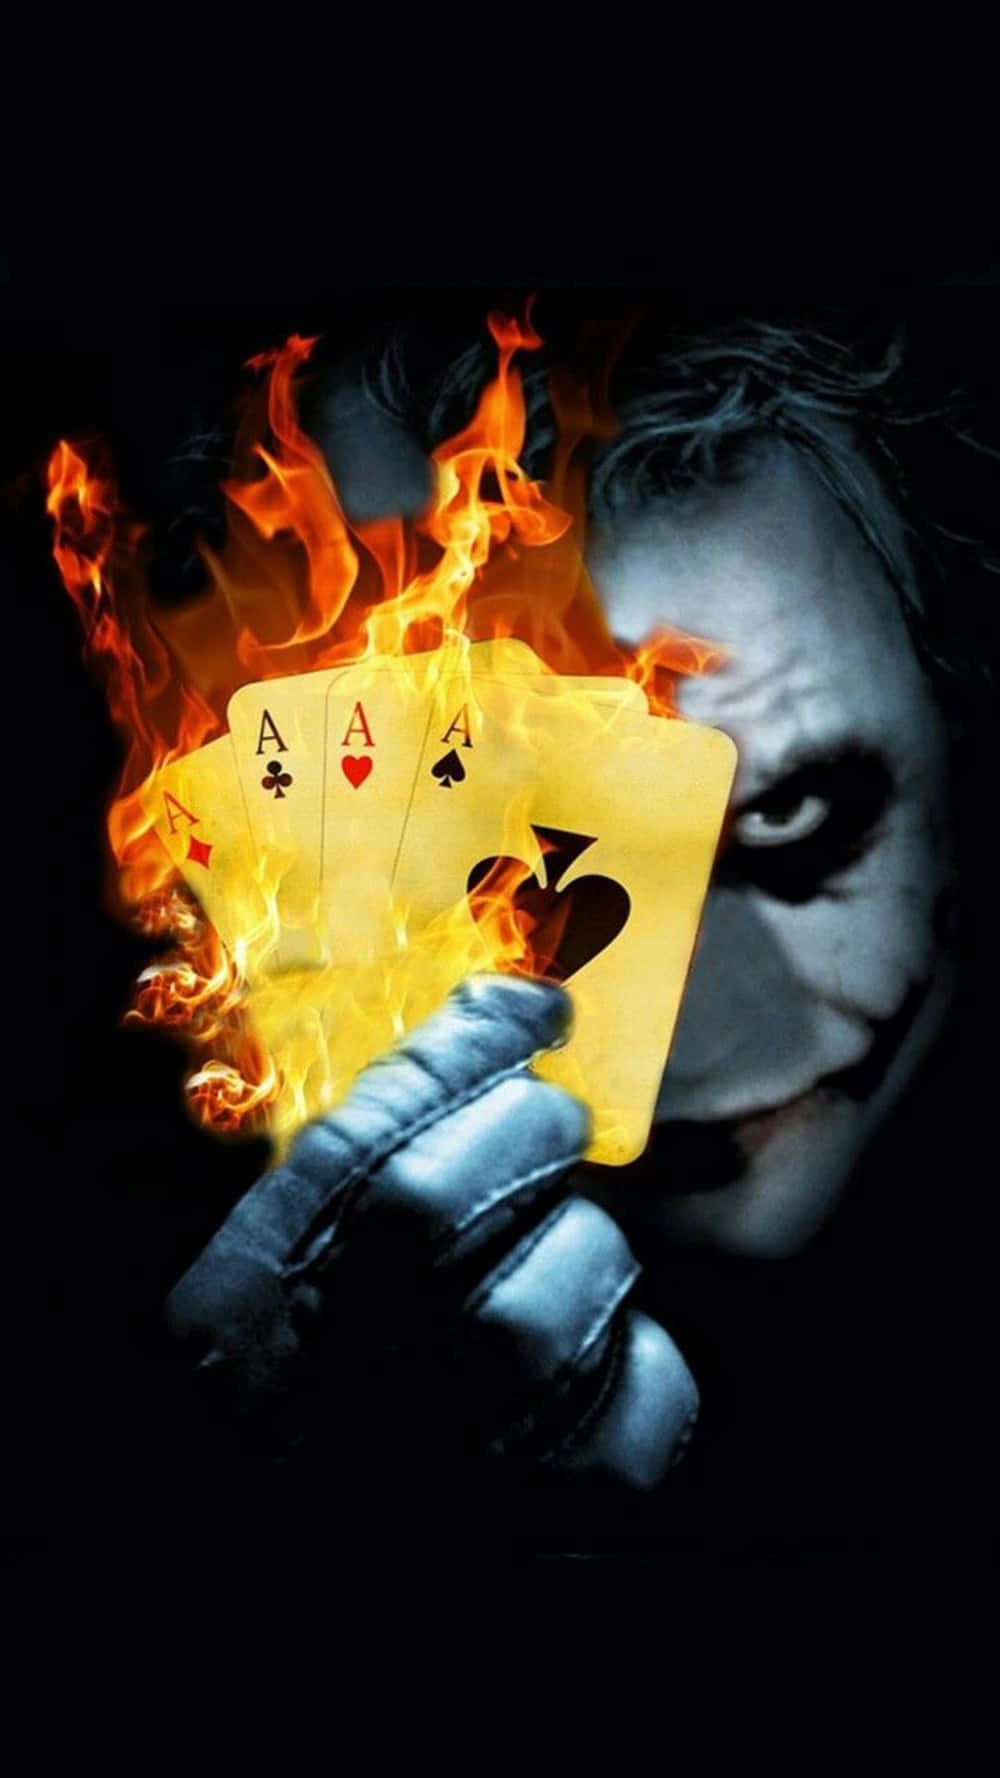 Dangerous Joker Scary Cards Fire Background